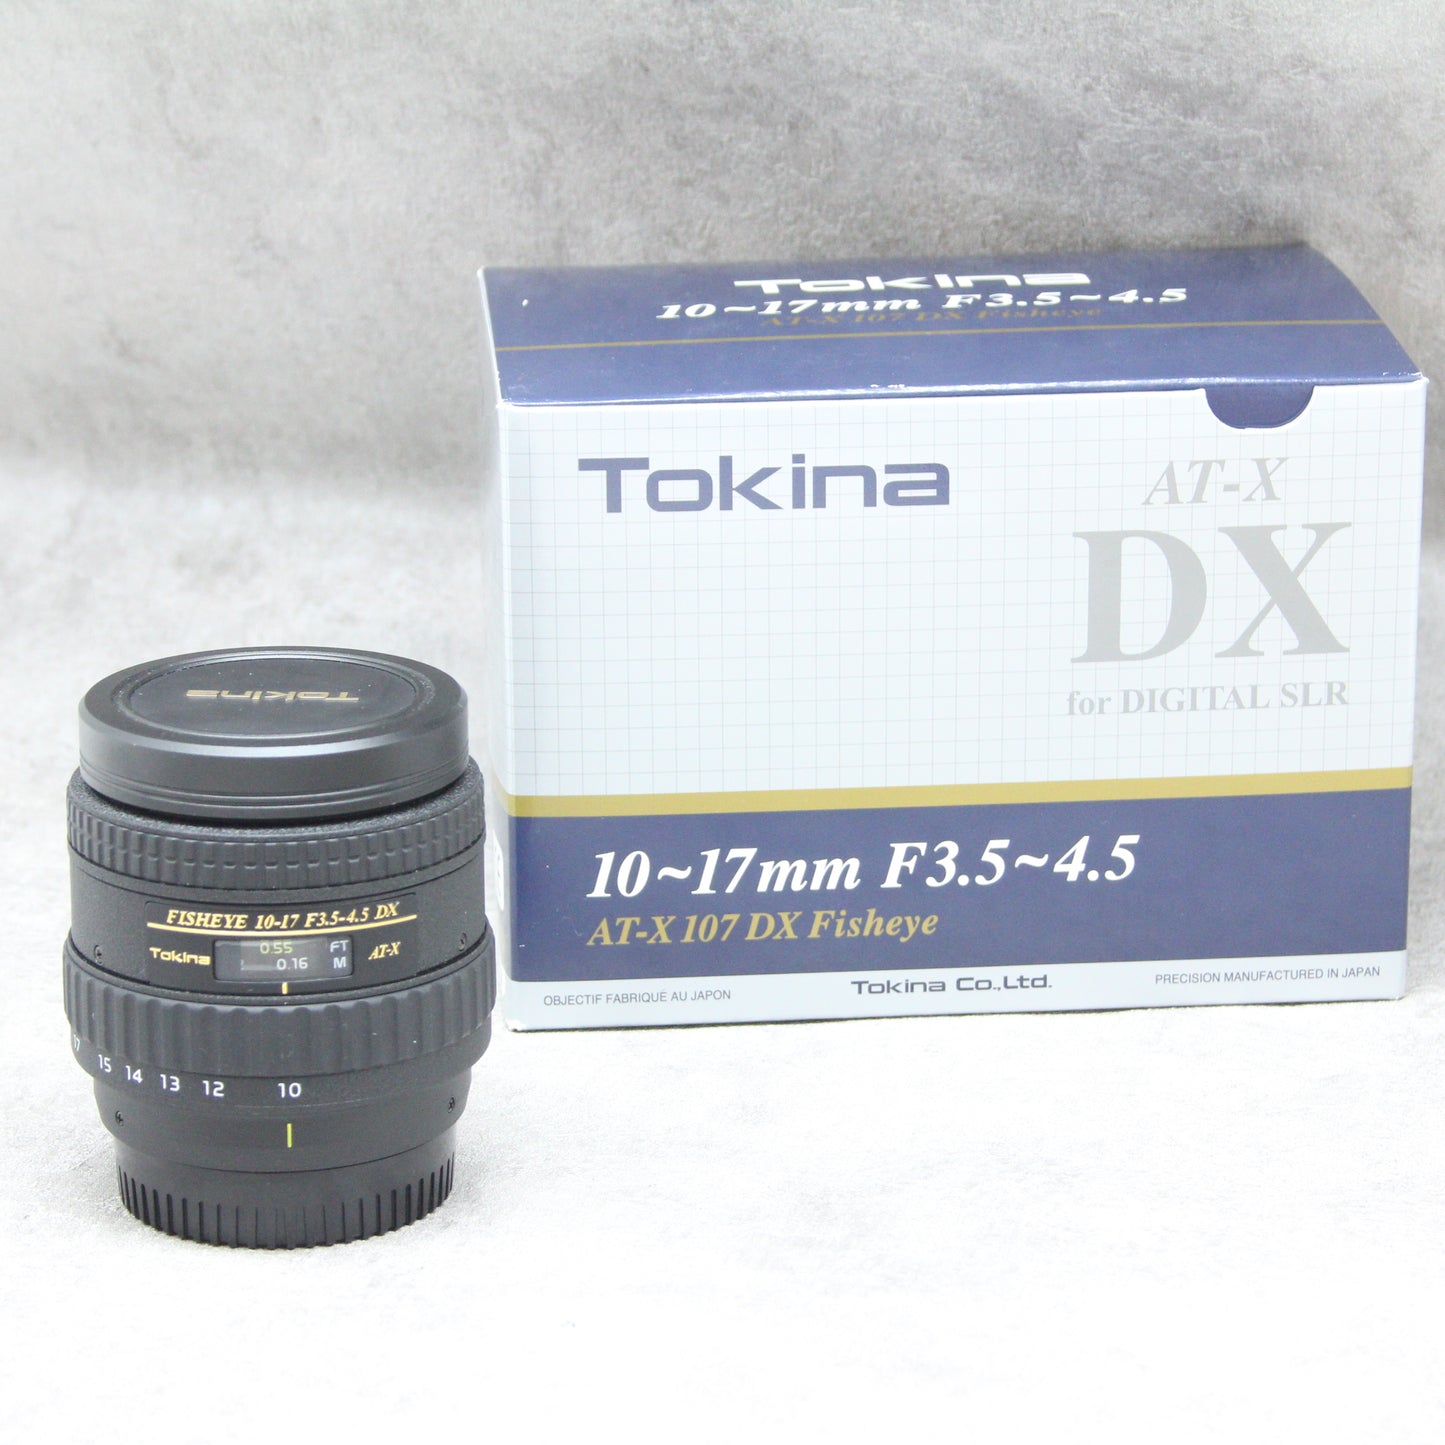 Tokina 魚眼ズームレンズ AT-X 107 AF DX NH Fisheye 10-17mm F3.5-4.5